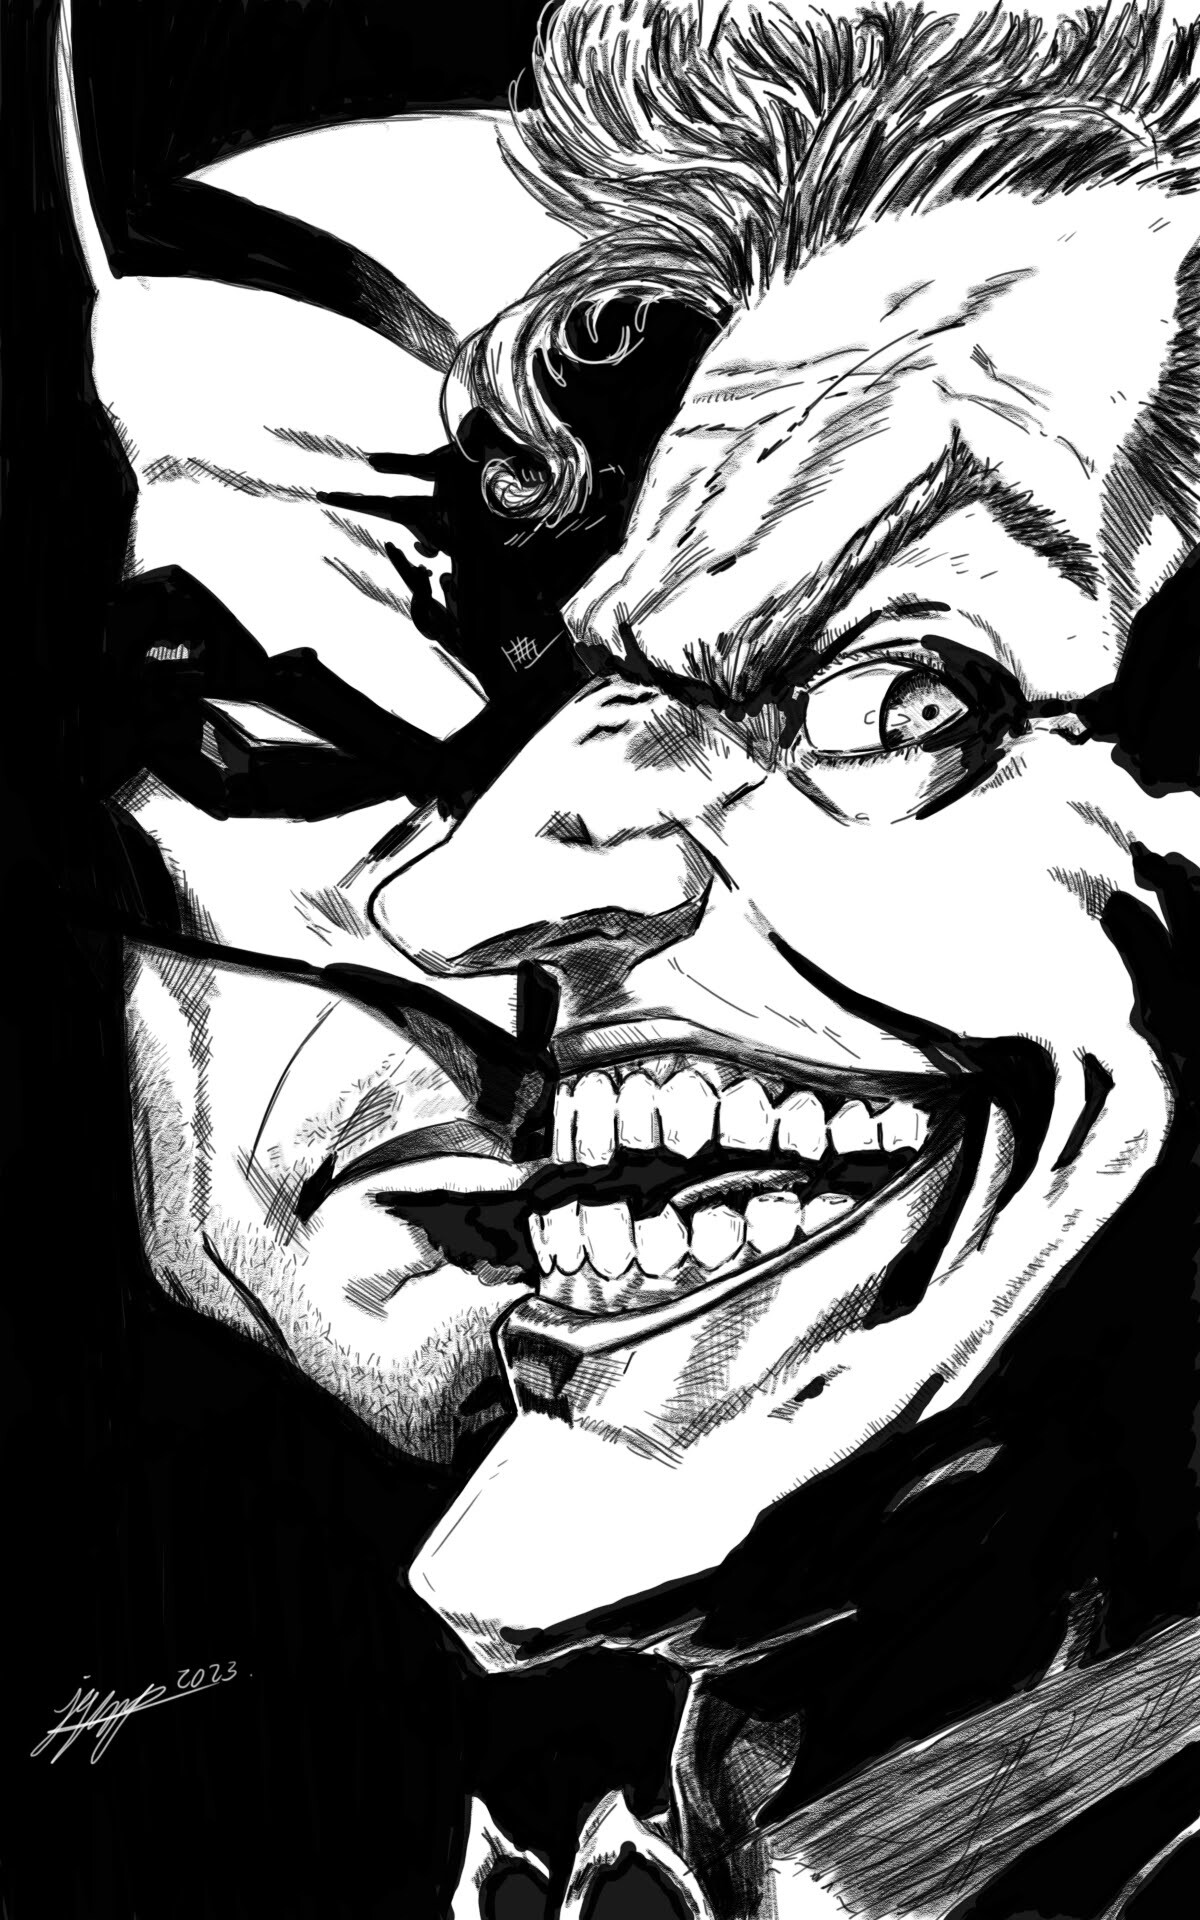 ArtStation - Batman & Joker